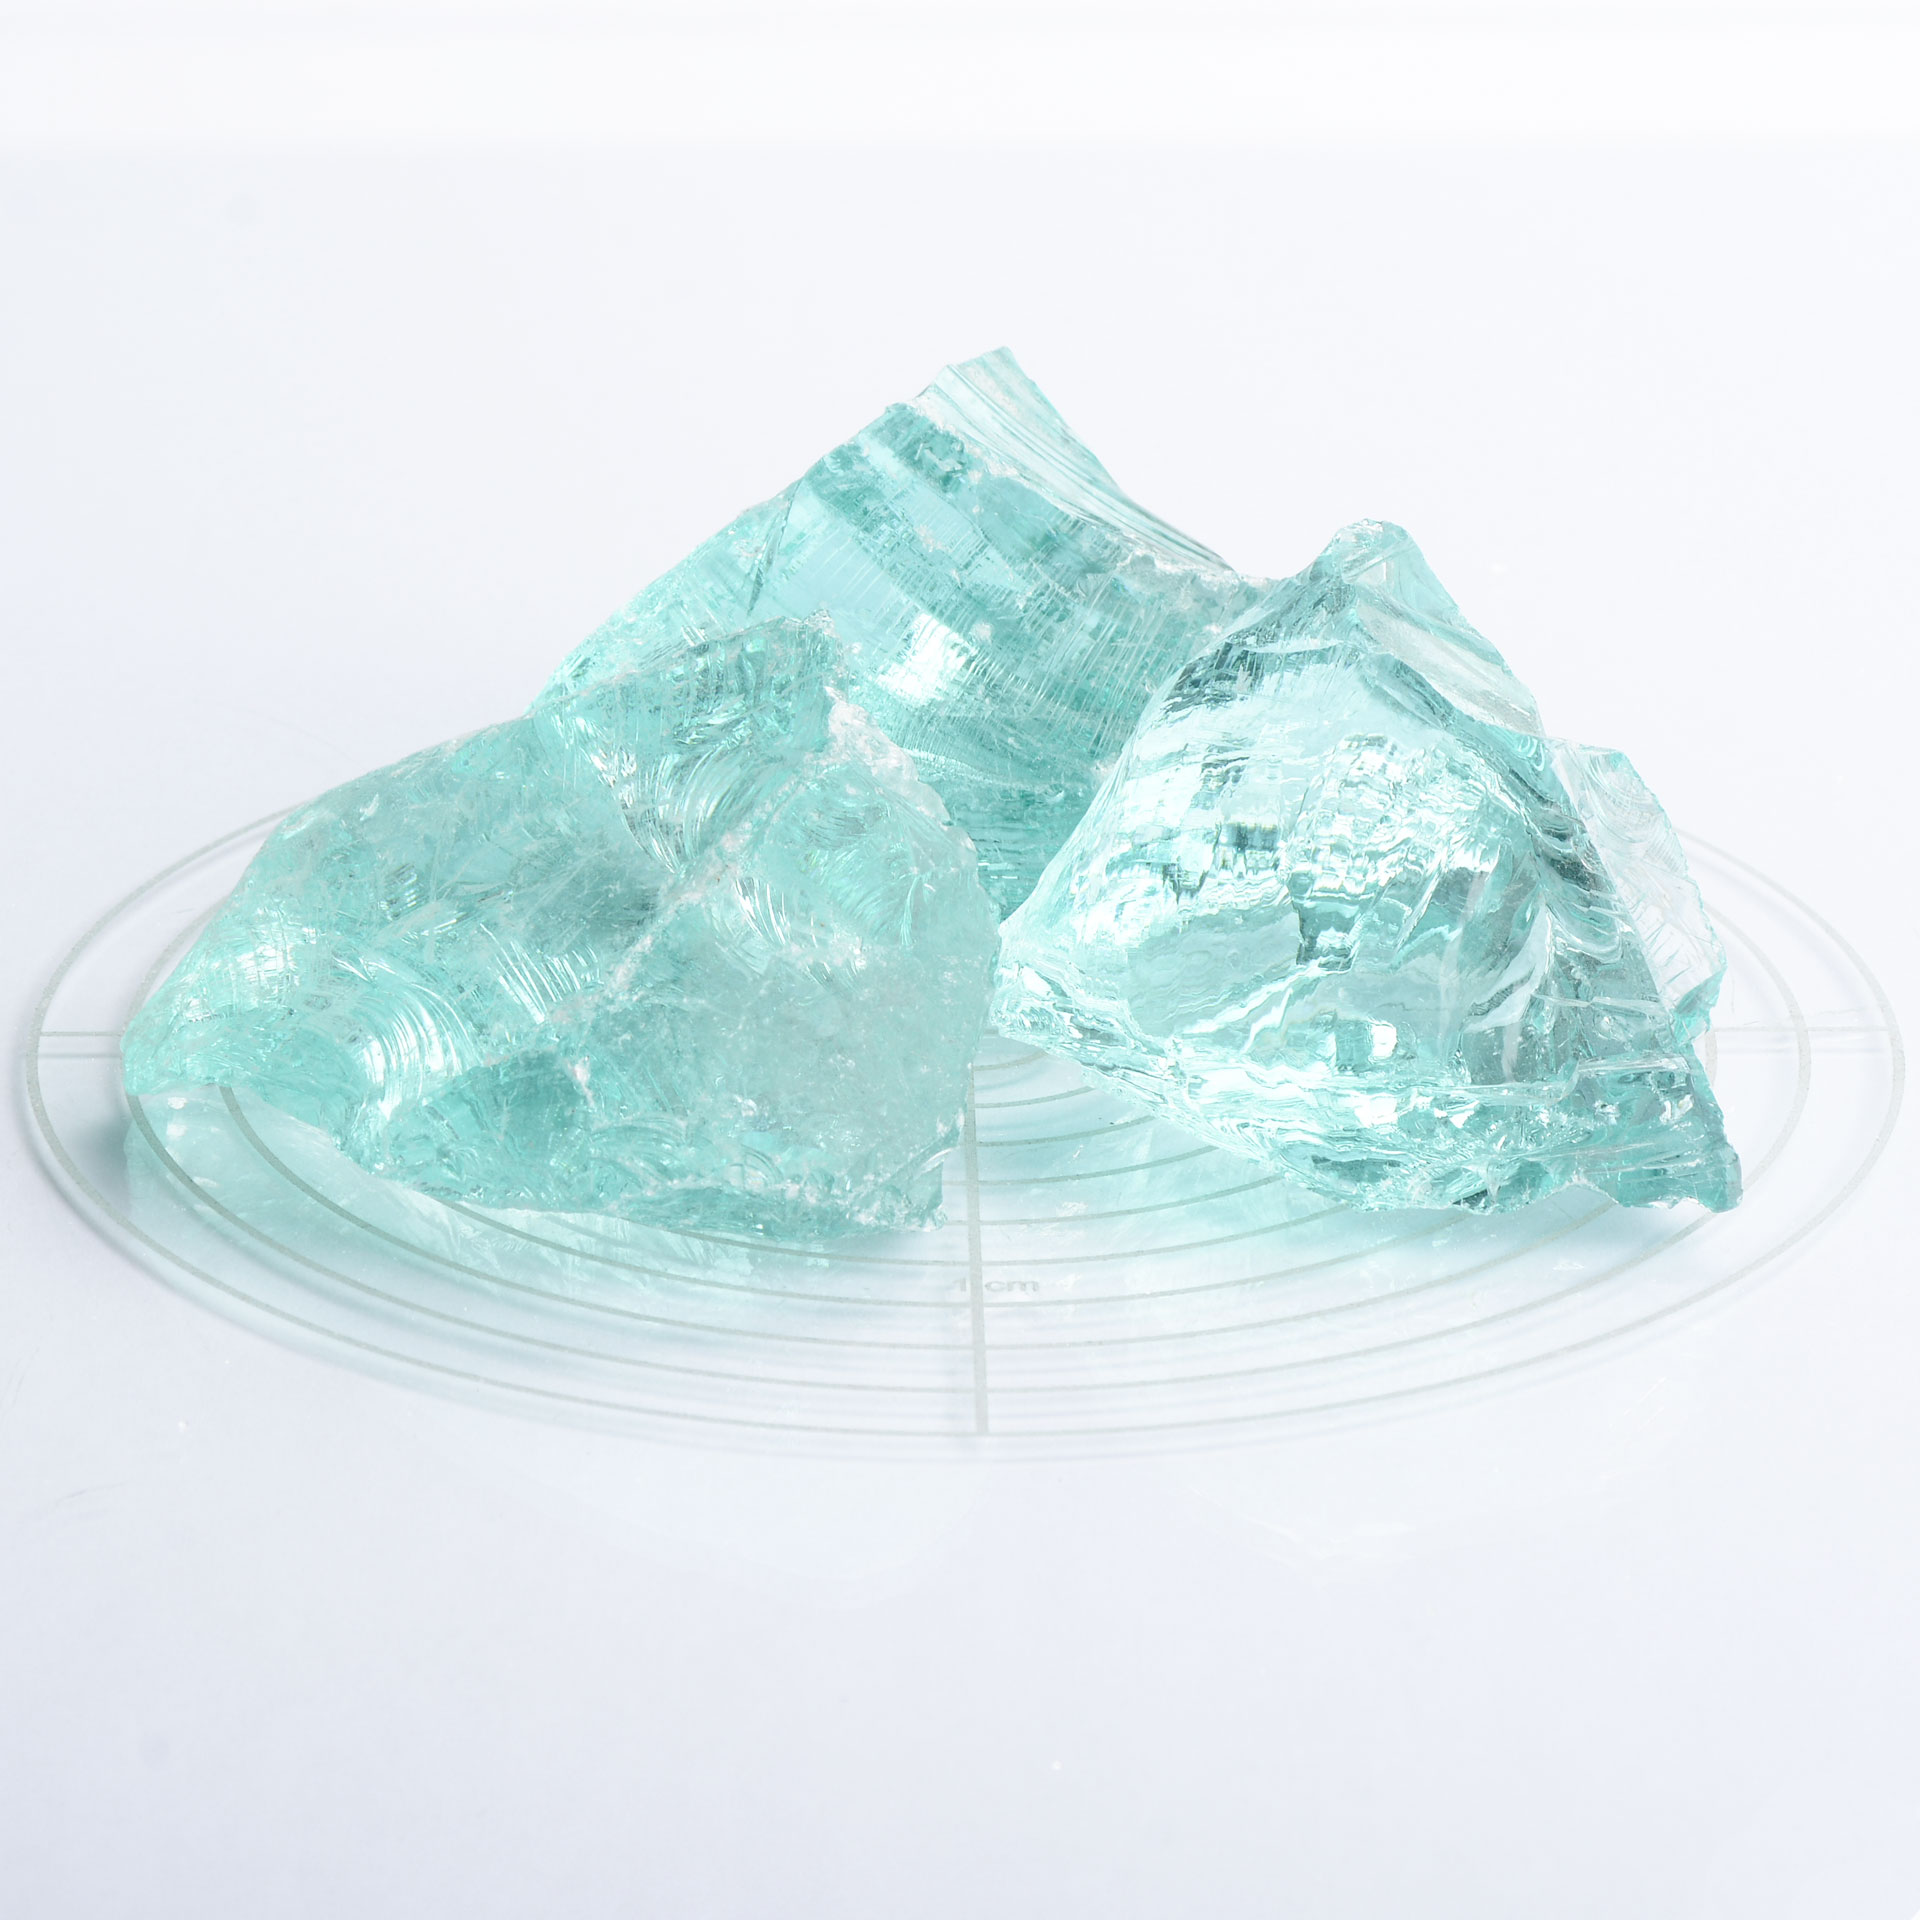 Schicker Mineral Glassteine azurblau 60-120 mm 10 kg20 kg Garten Glasbrocken